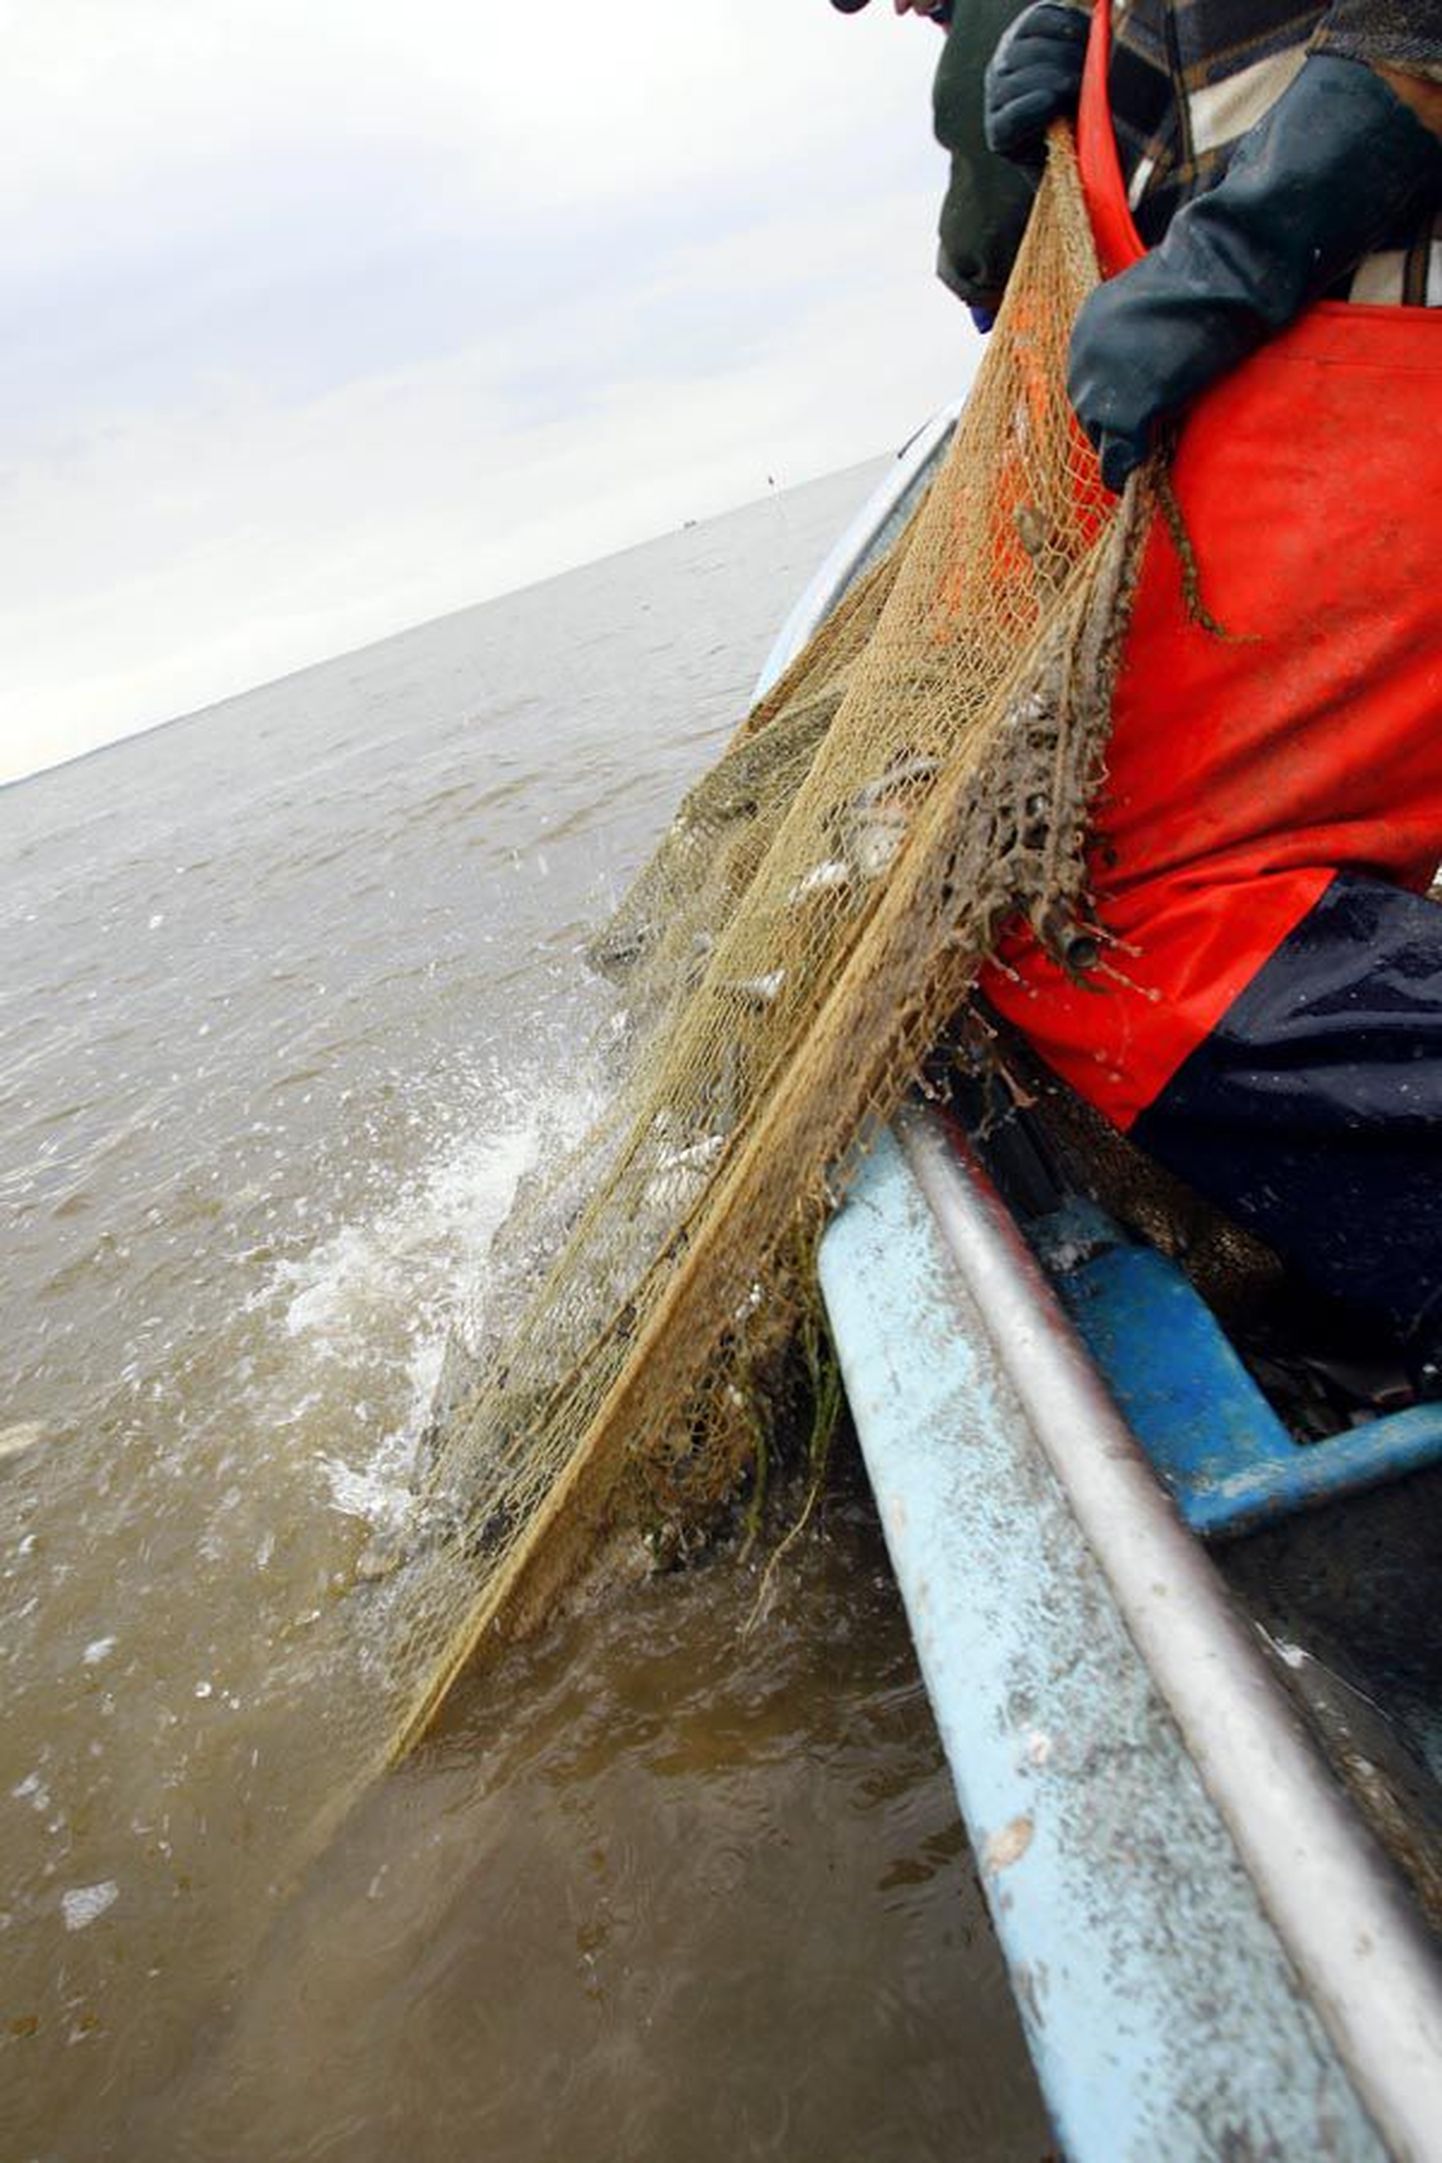 Võrtsjärve kalur Aivar Kärp tõmbas oma rannapoolsetest mõrdadest välja ligi 500 kilogrammi hõbekokresid.